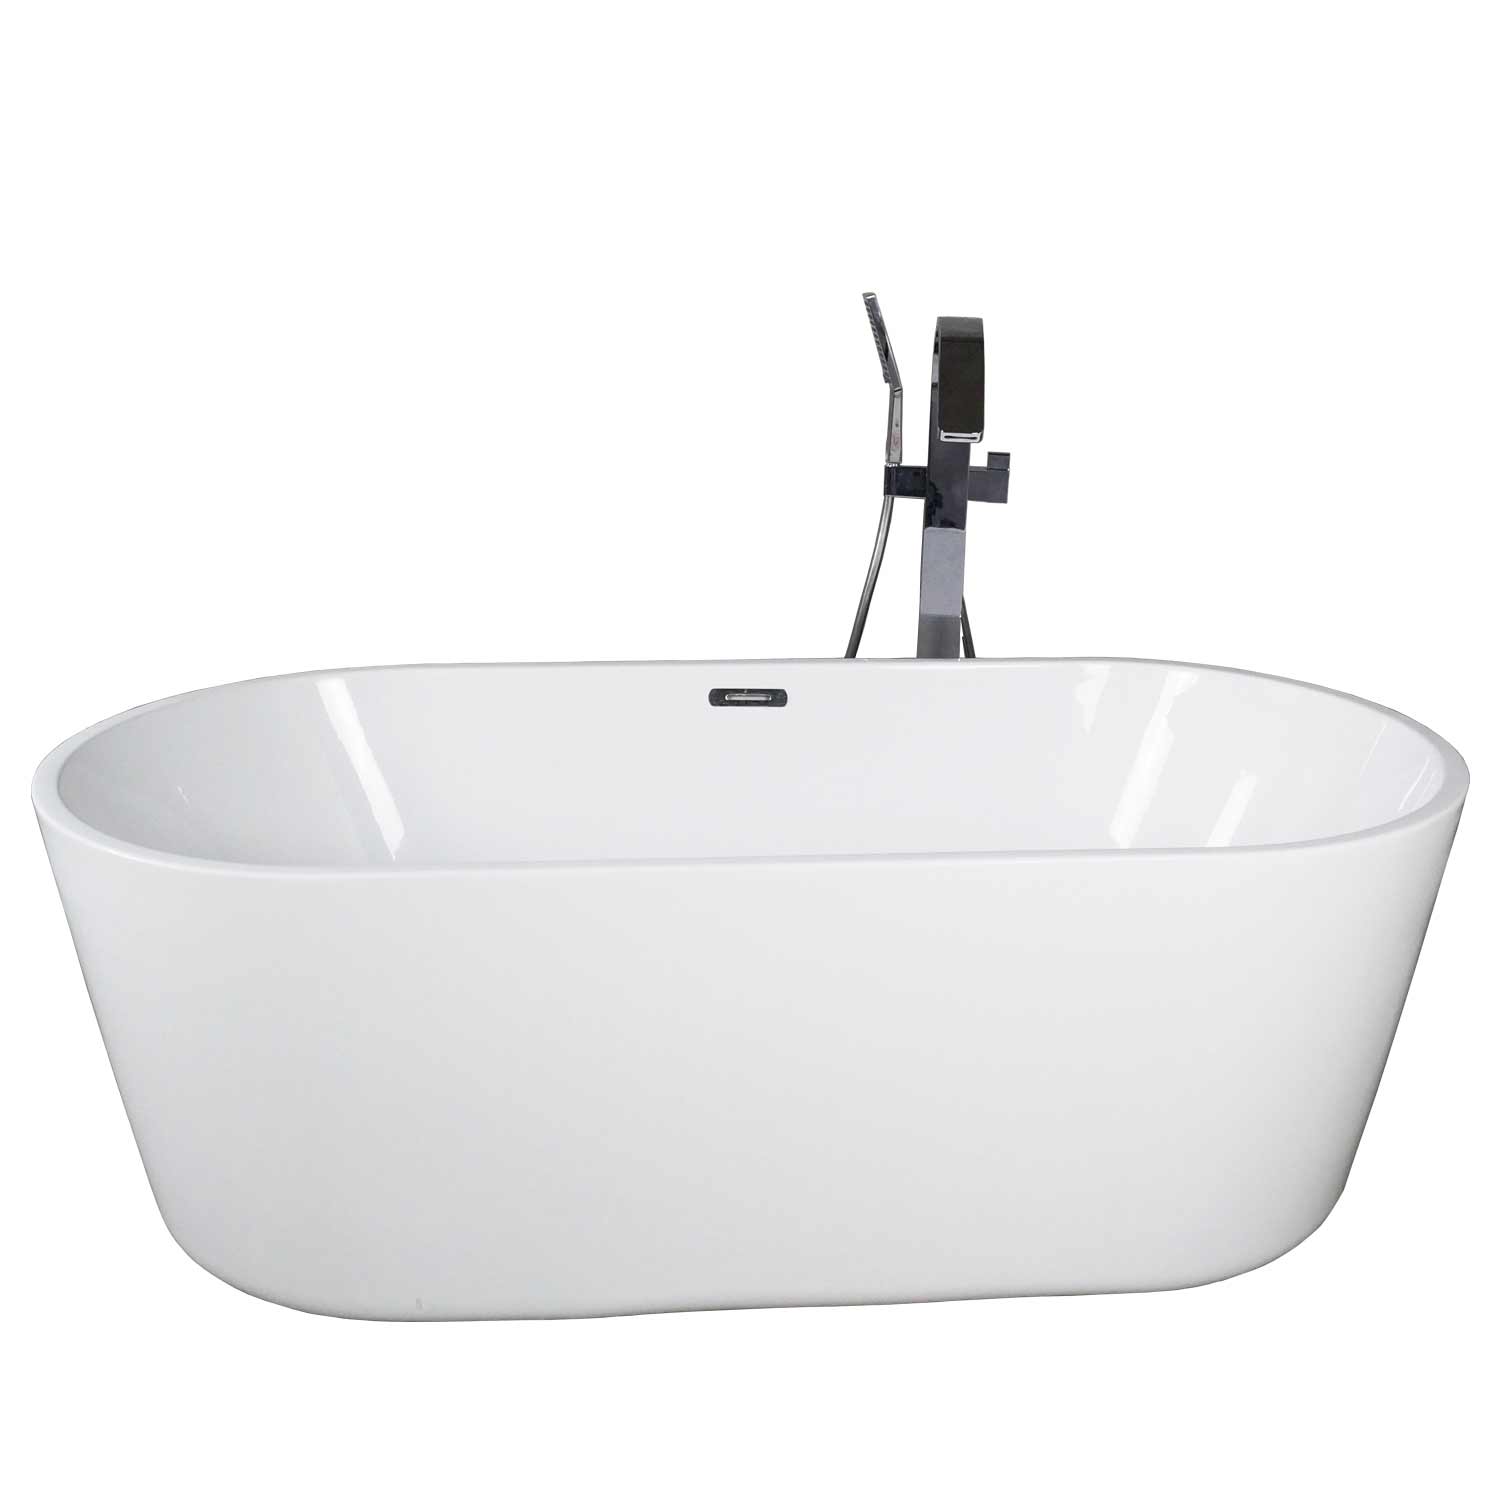 Portable Bathtub,70 Inch Oval Acrylic Portable Bathtub for Adult